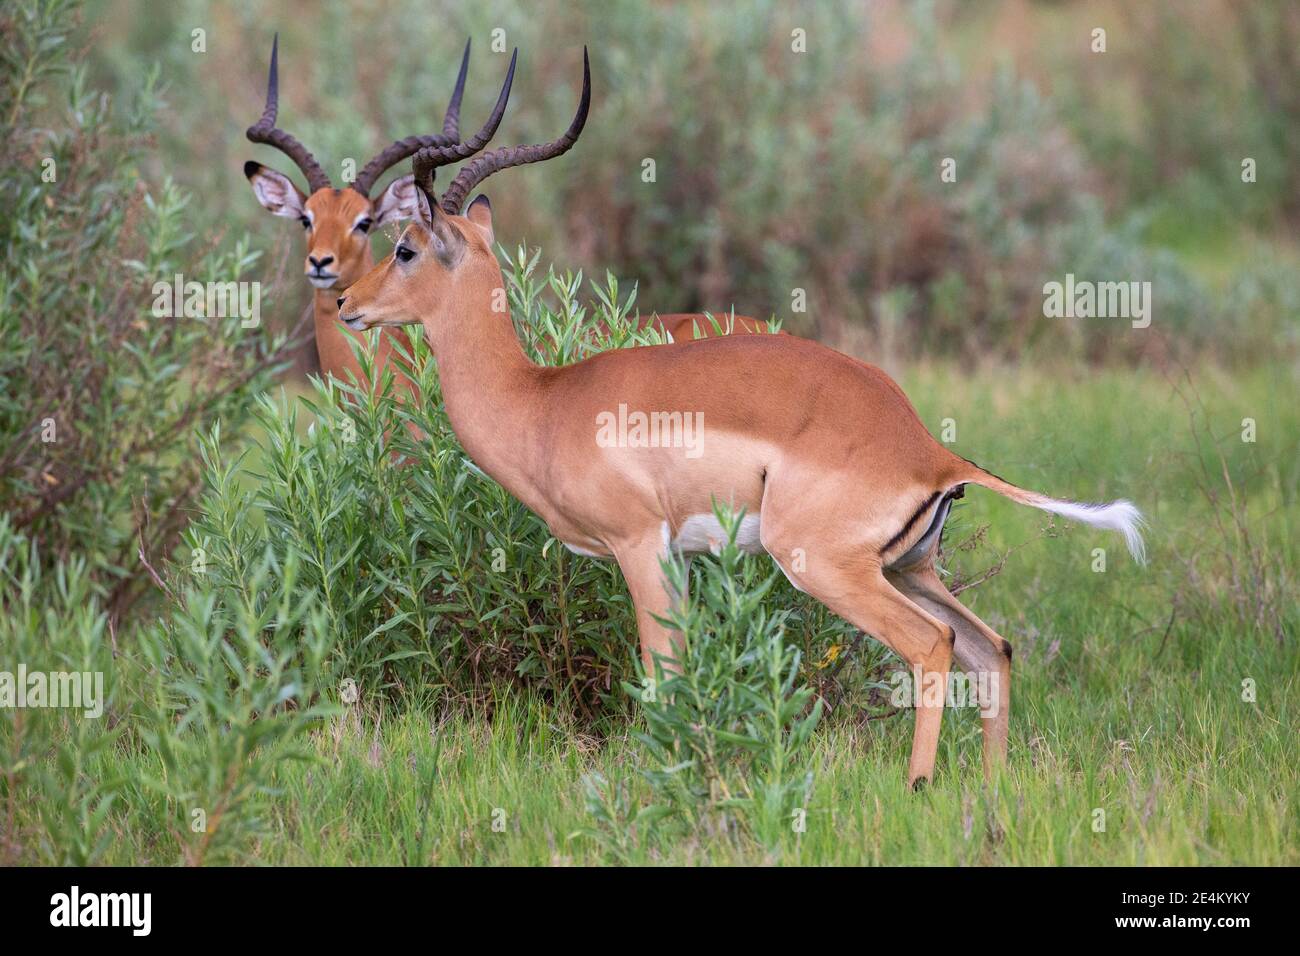 Impala (Aepyceros melampus). Zeigt gerippt, S, geformt, lyrate, Hörner von erwachsenen Männchen. Stuhlbildung in Pelletform. Recycling der Vegetation. Zellulosebruch Stockfoto